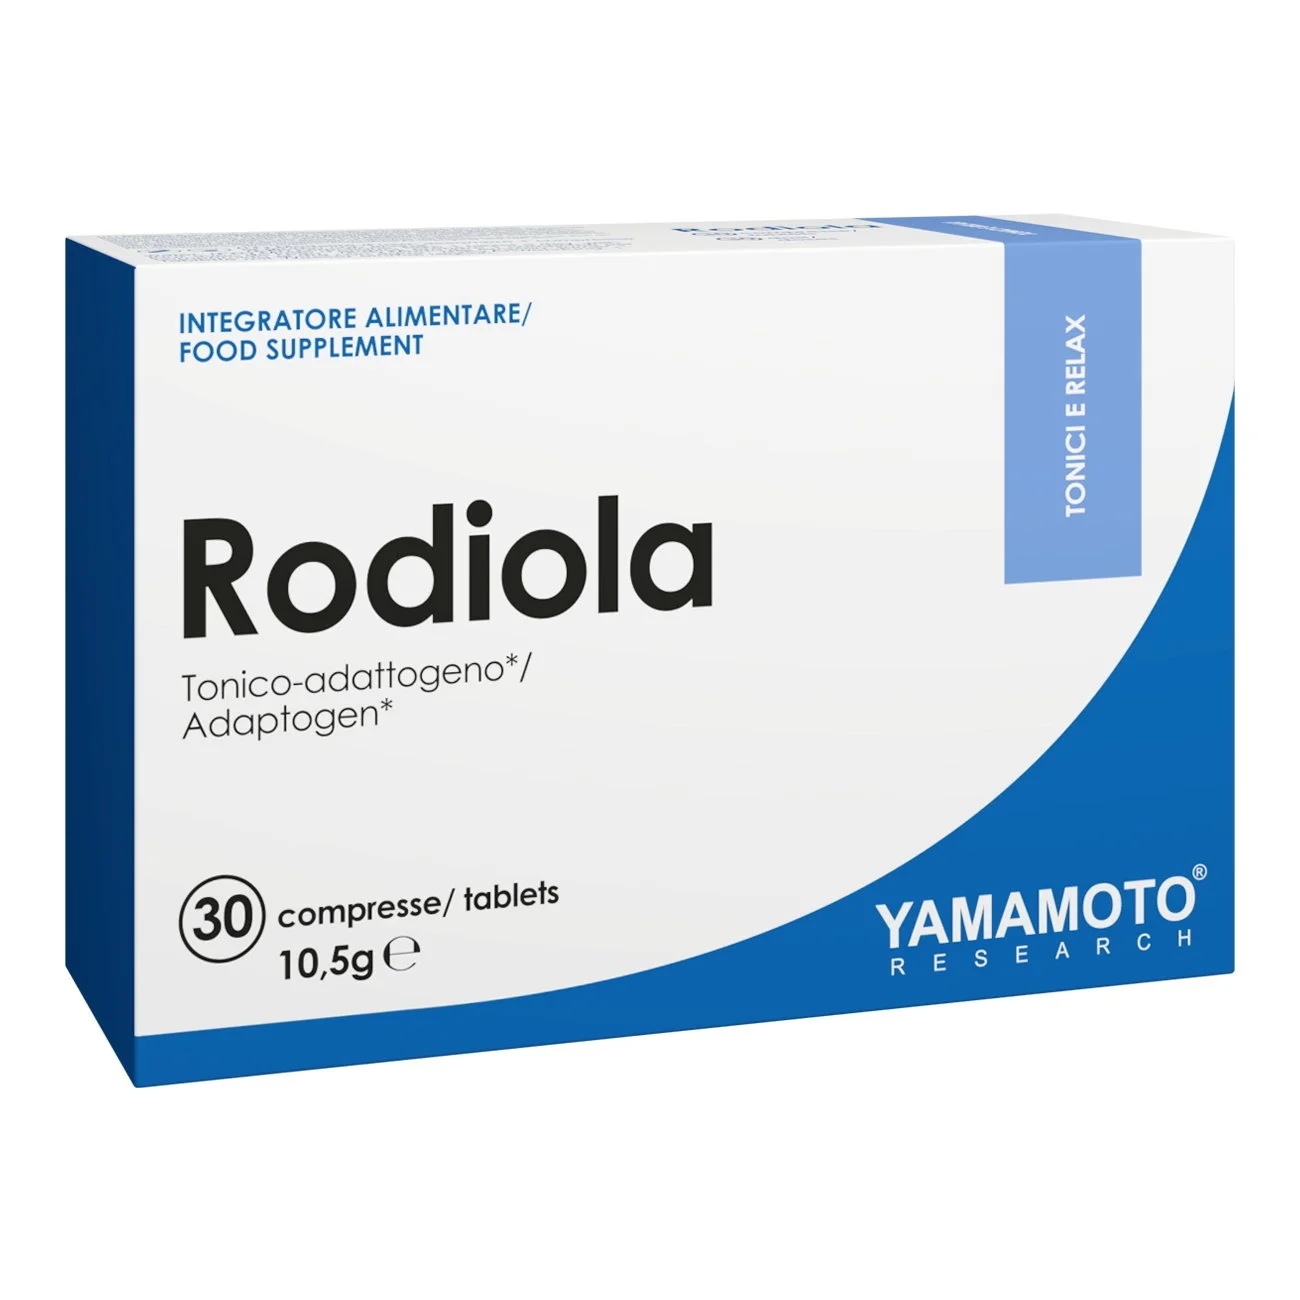 Yamamoto Natural Series Rodiola 30 tablets / 30 doses